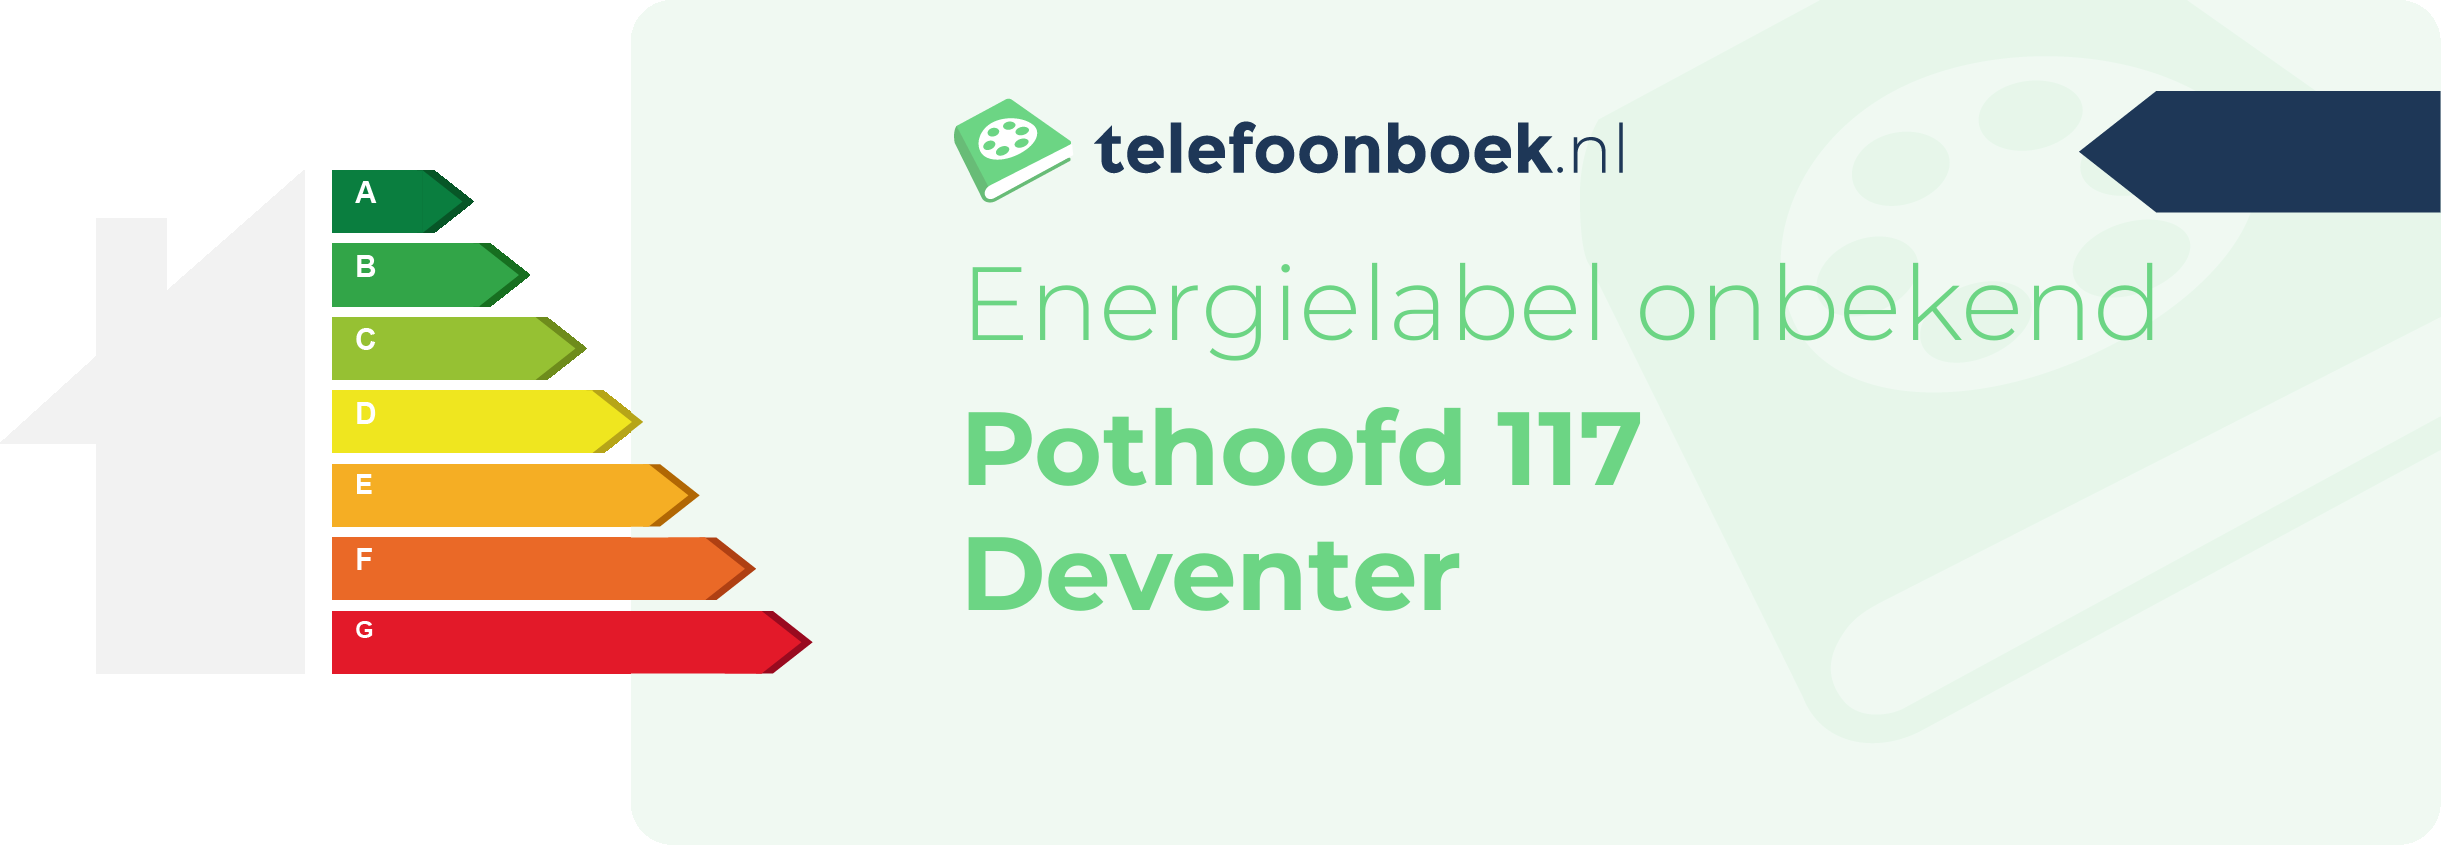 Energielabel Pothoofd 117 Deventer